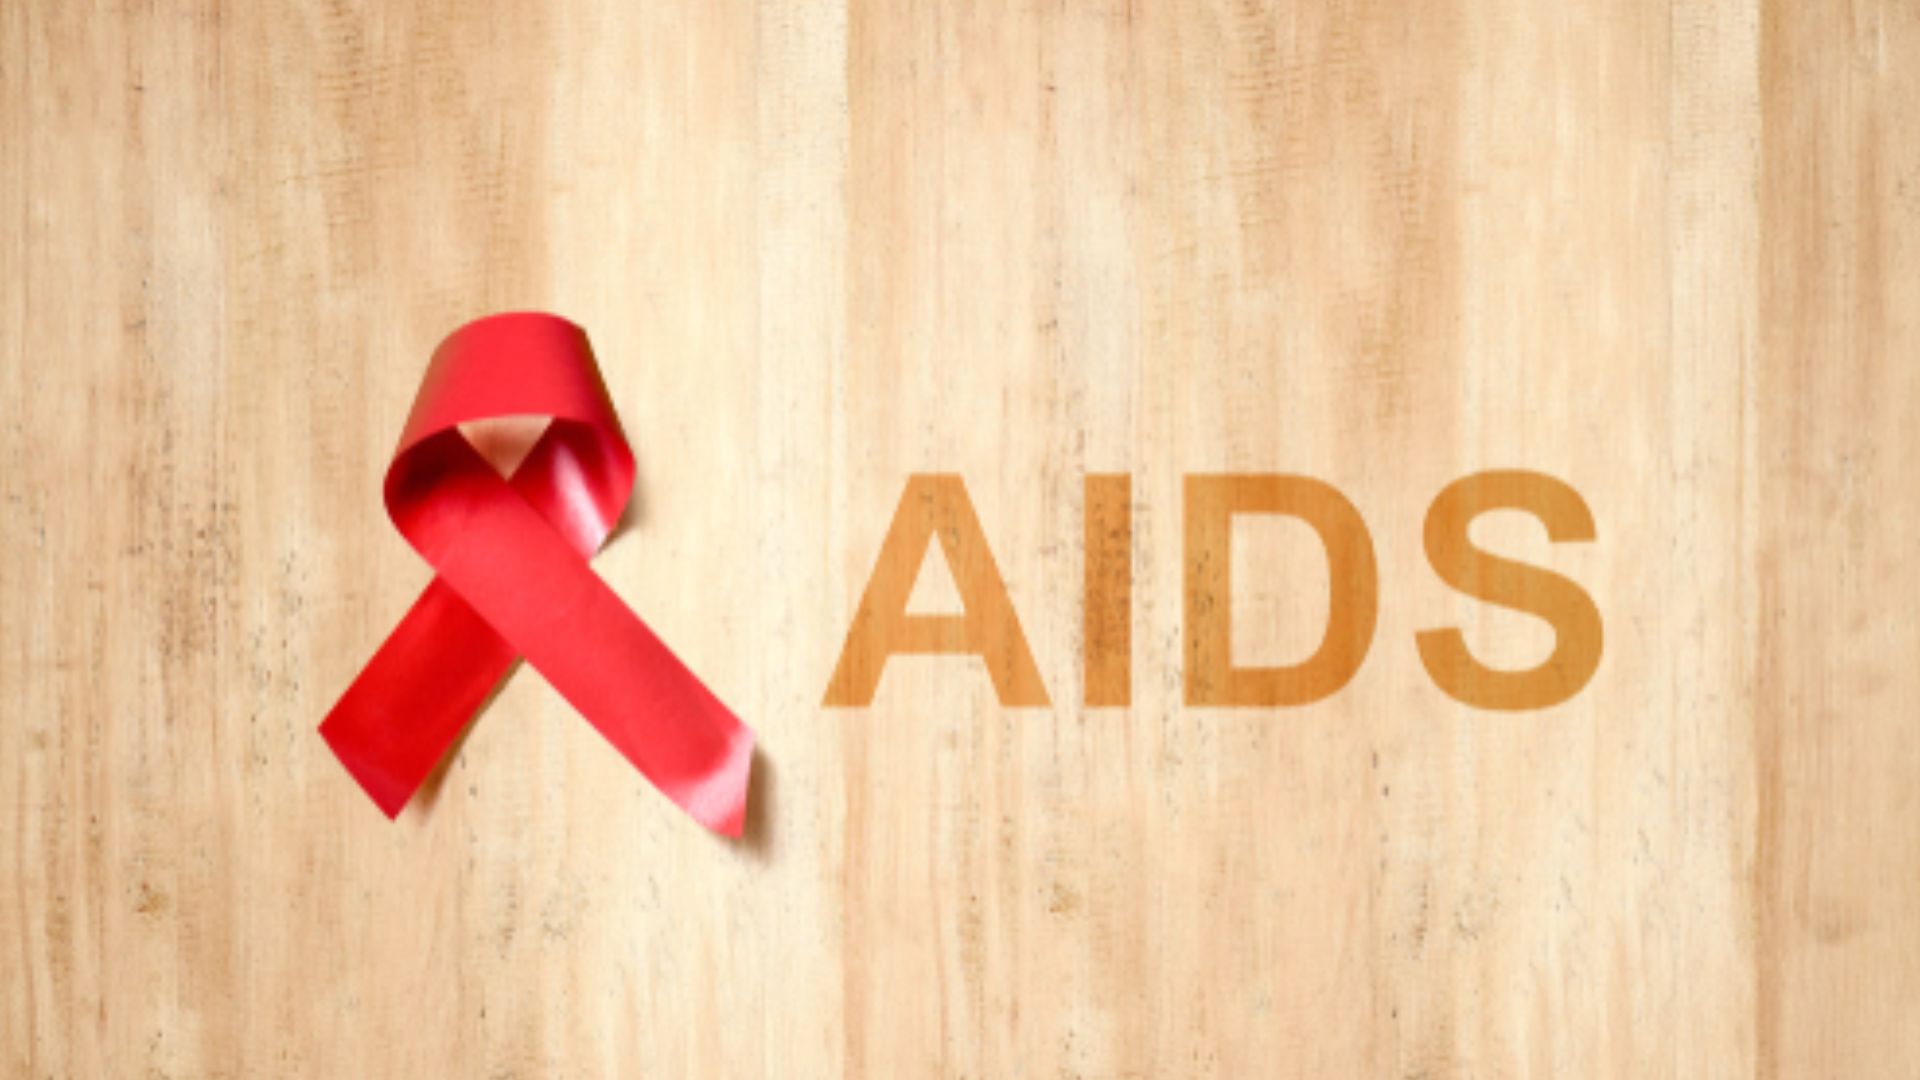 2030 तक एड्स खत्म करने में आने वाली चुनौतियों से निपटने के लिए साझेदारी मजबूत करें : WHO